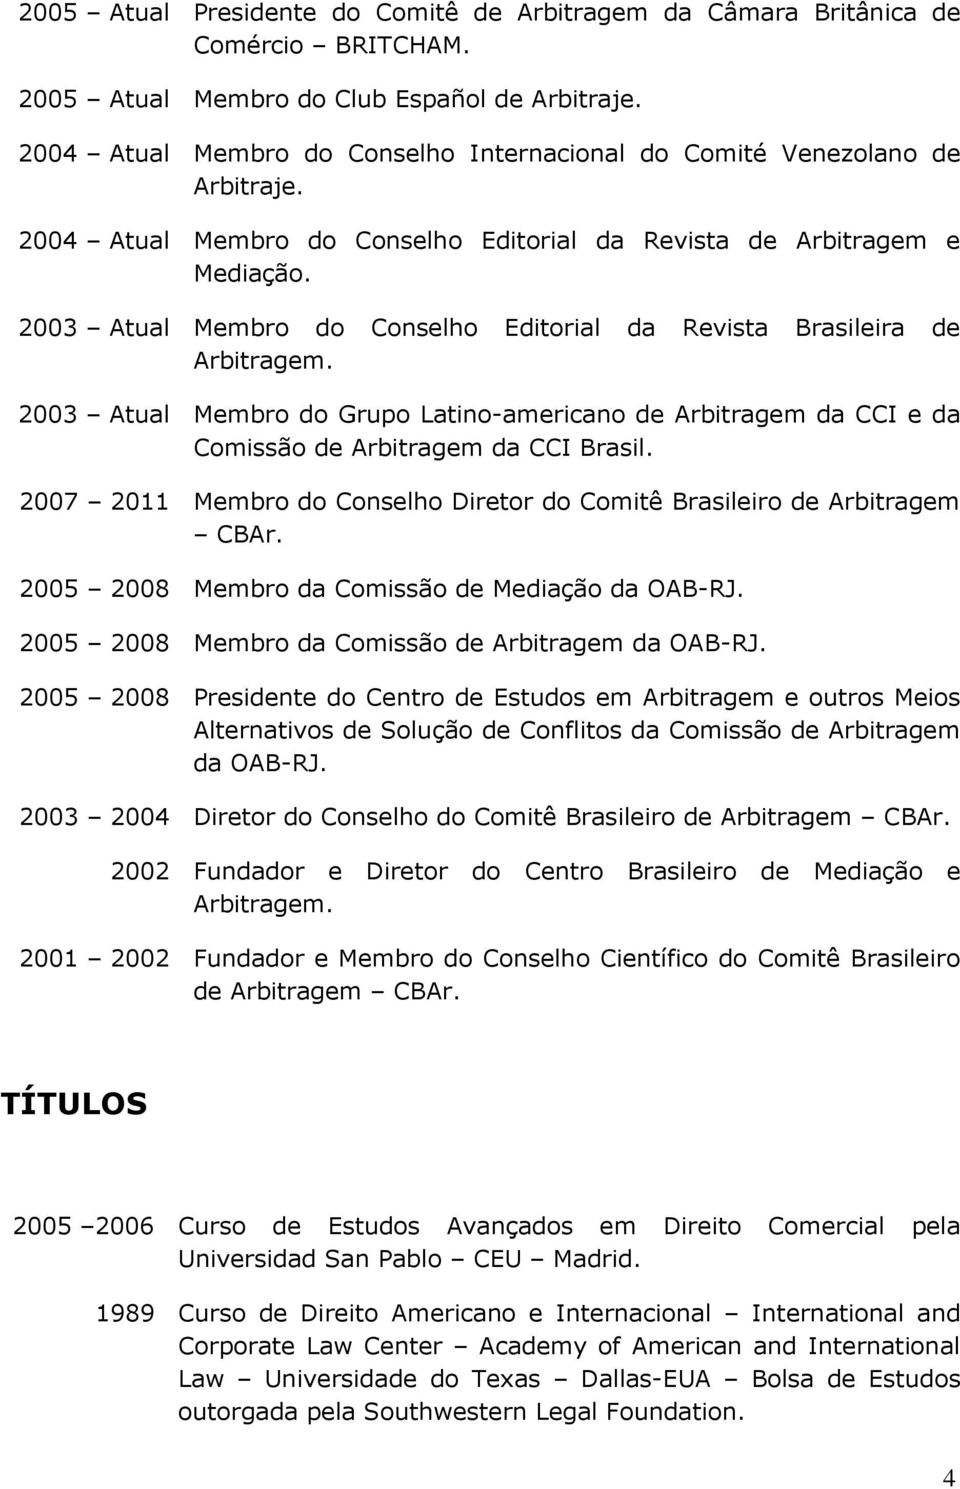 2003 Atual Membro do Conselho Editorial da Revista Brasileira de Arbitragem. 2003 Atual Membro do Grupo Latino-americano de Arbitragem da CCI e da Comissão de Arbitragem da CCI Brasil.